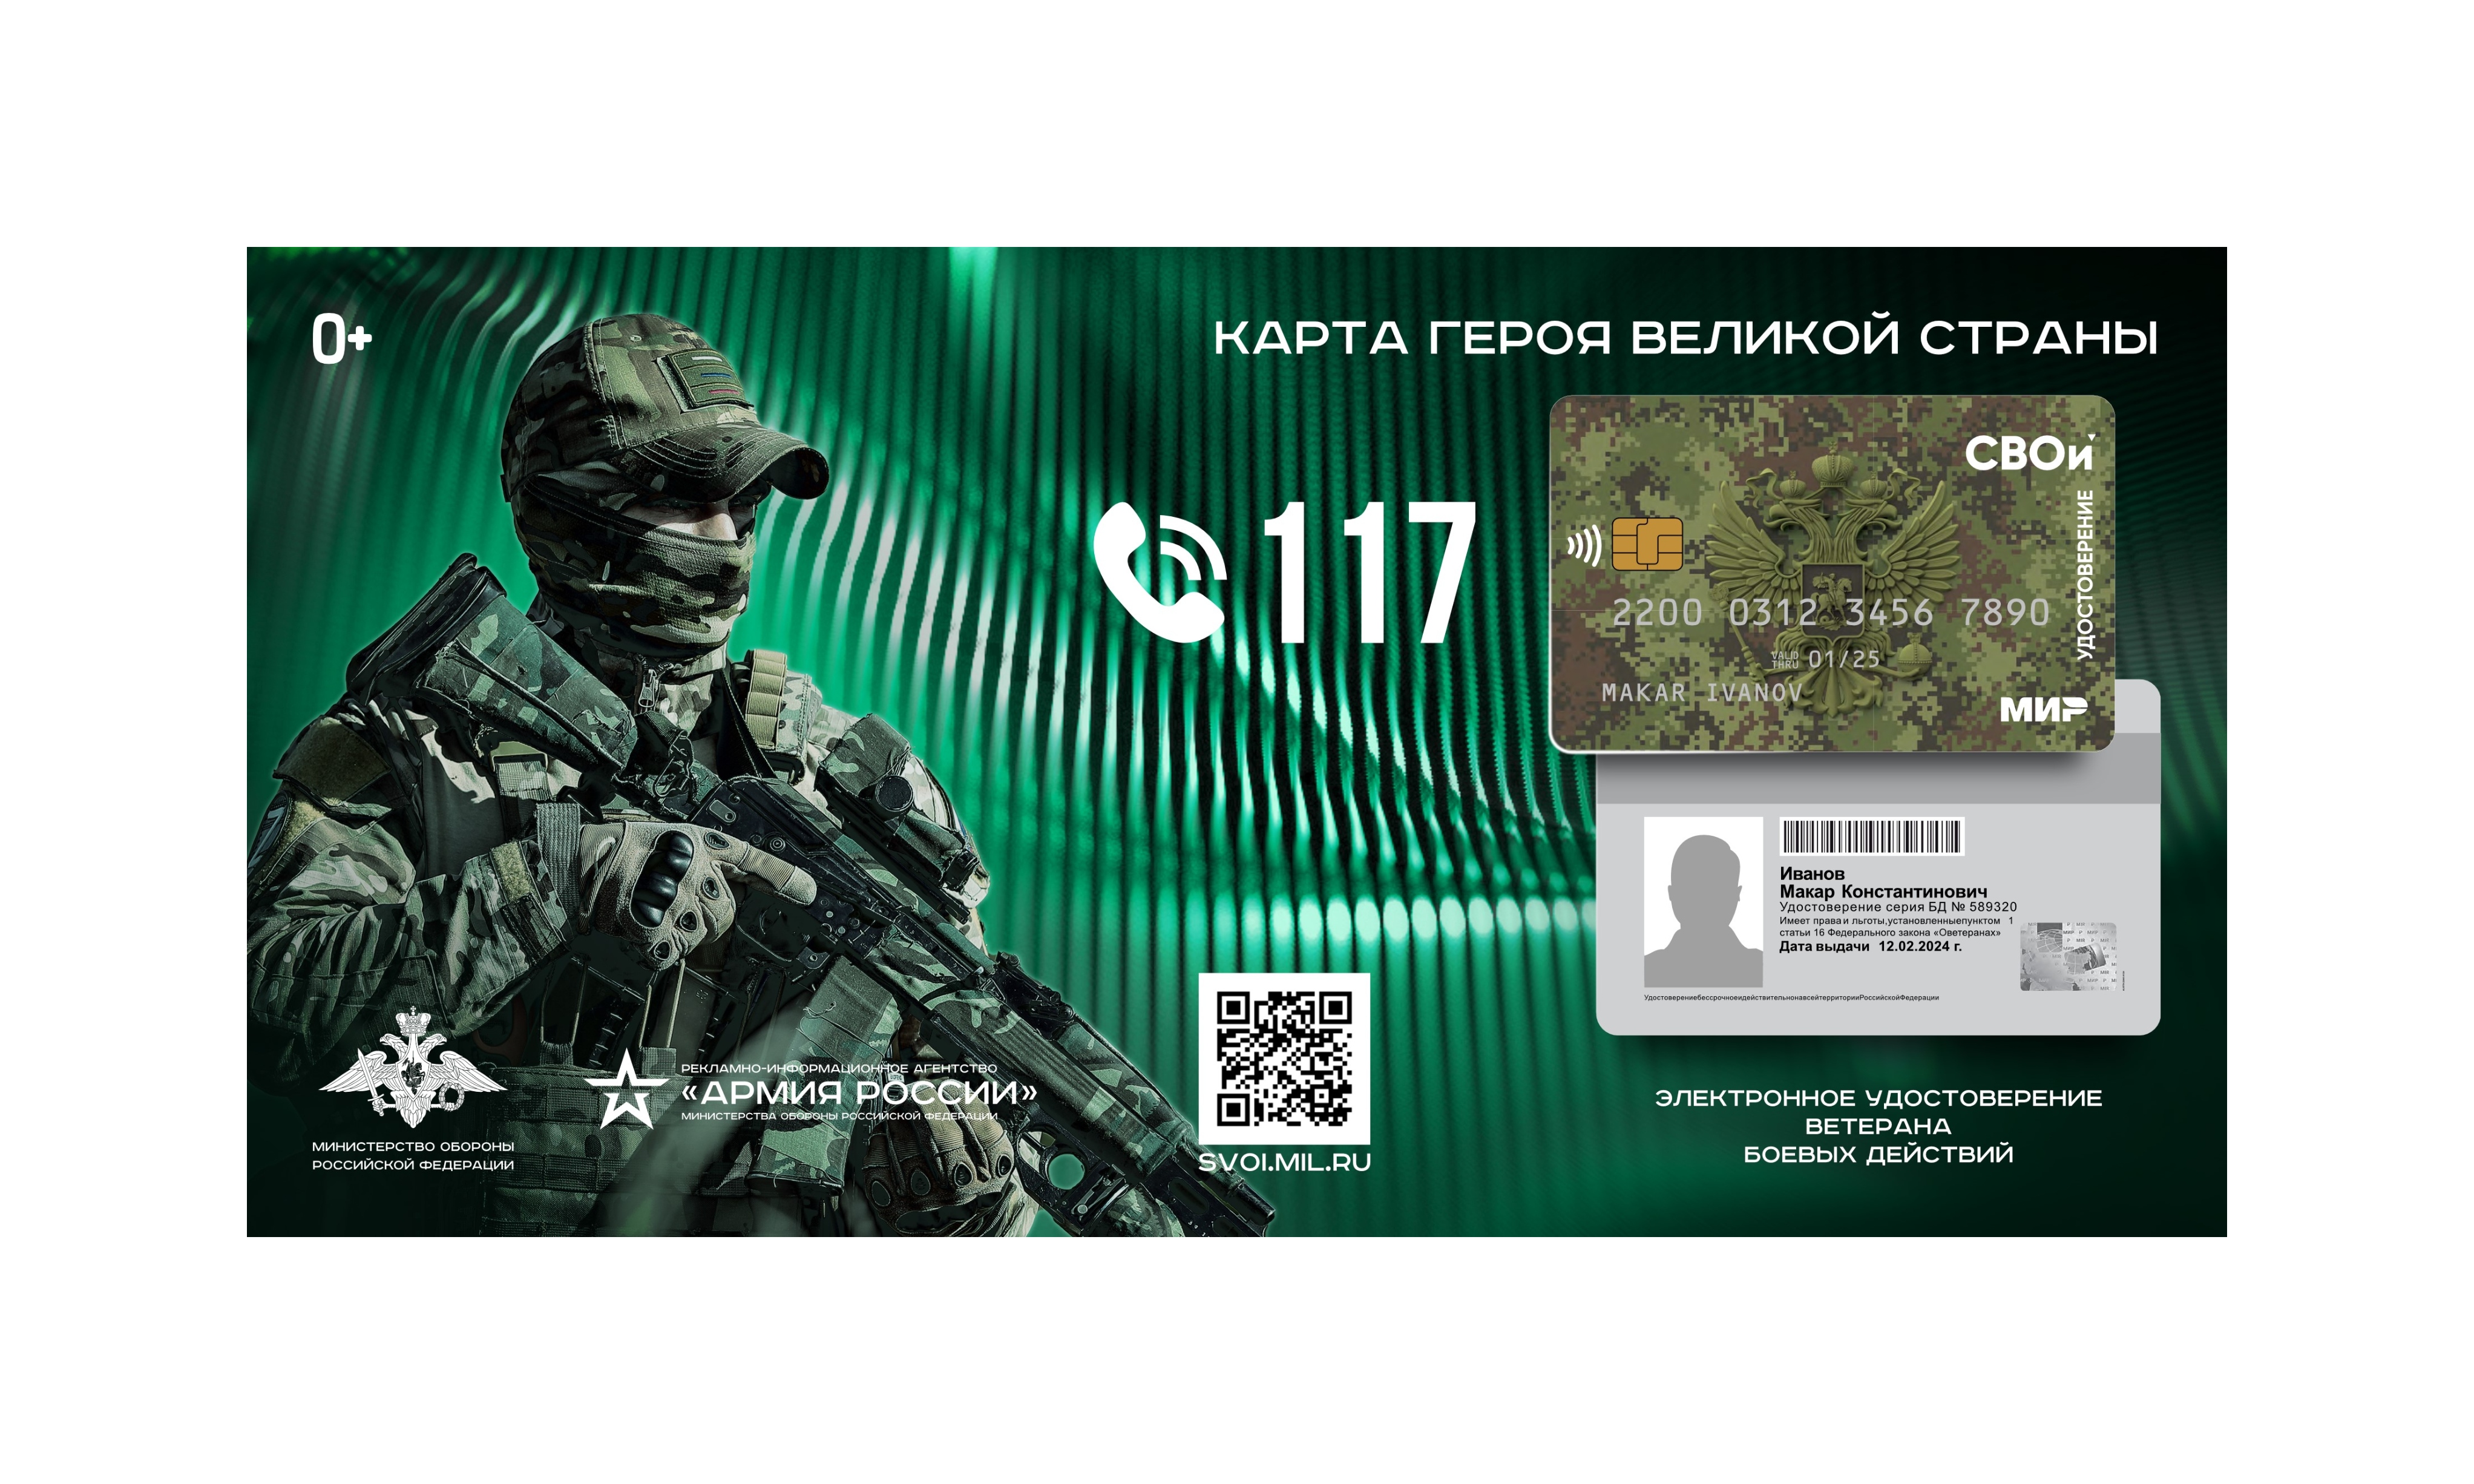 Электронное удостоверение ветерана боевых действий «СВОи».